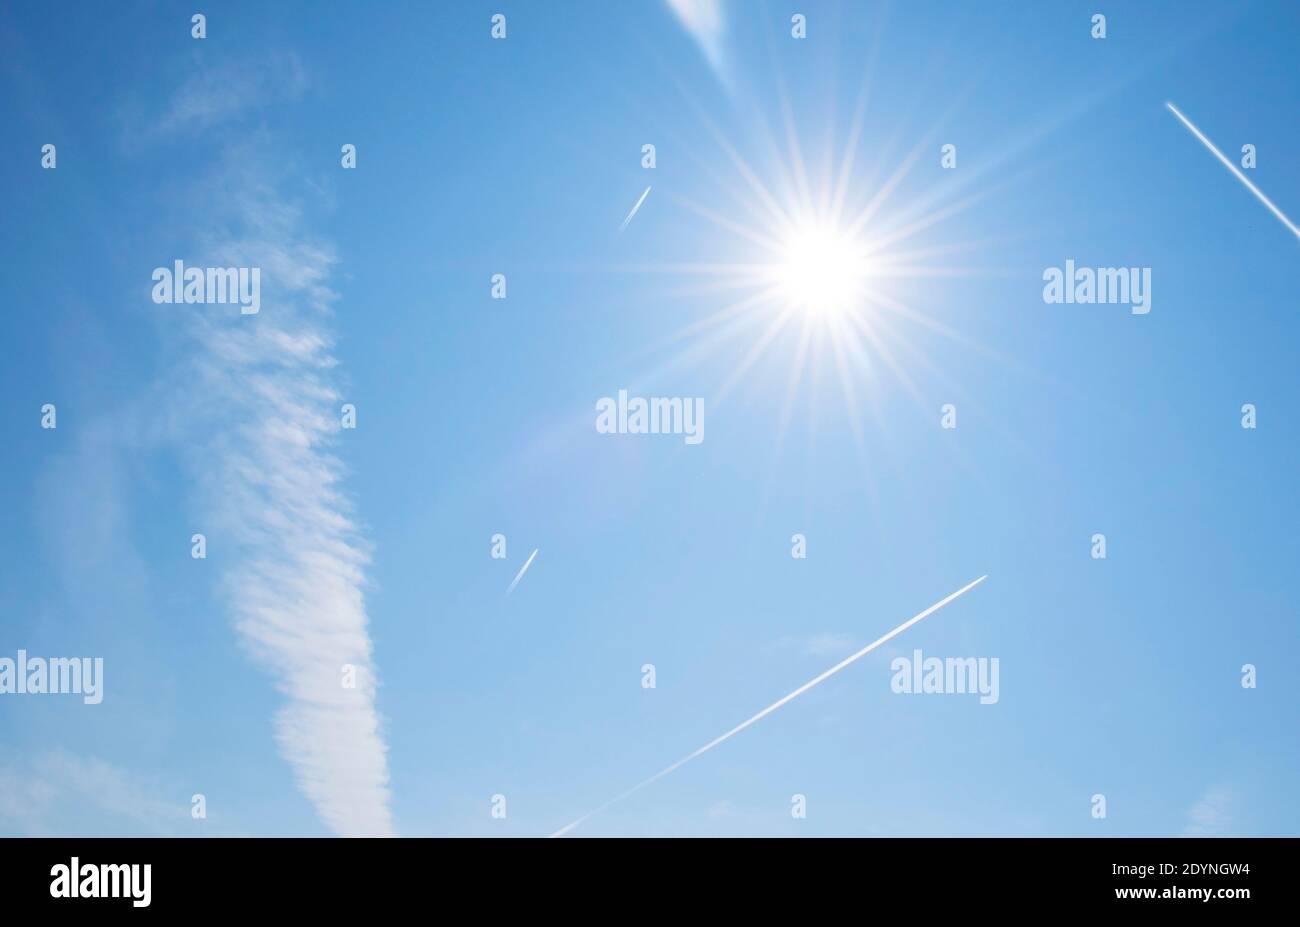 Chemtrails am Himmel an einem klaren, sonnigen Tag. Verschwörungstheorie Foto von Jetdampf und CO2-Fußabdruck von kommerziellen Flugzeugen gemacht. Viel Flugverkehr Stockfoto